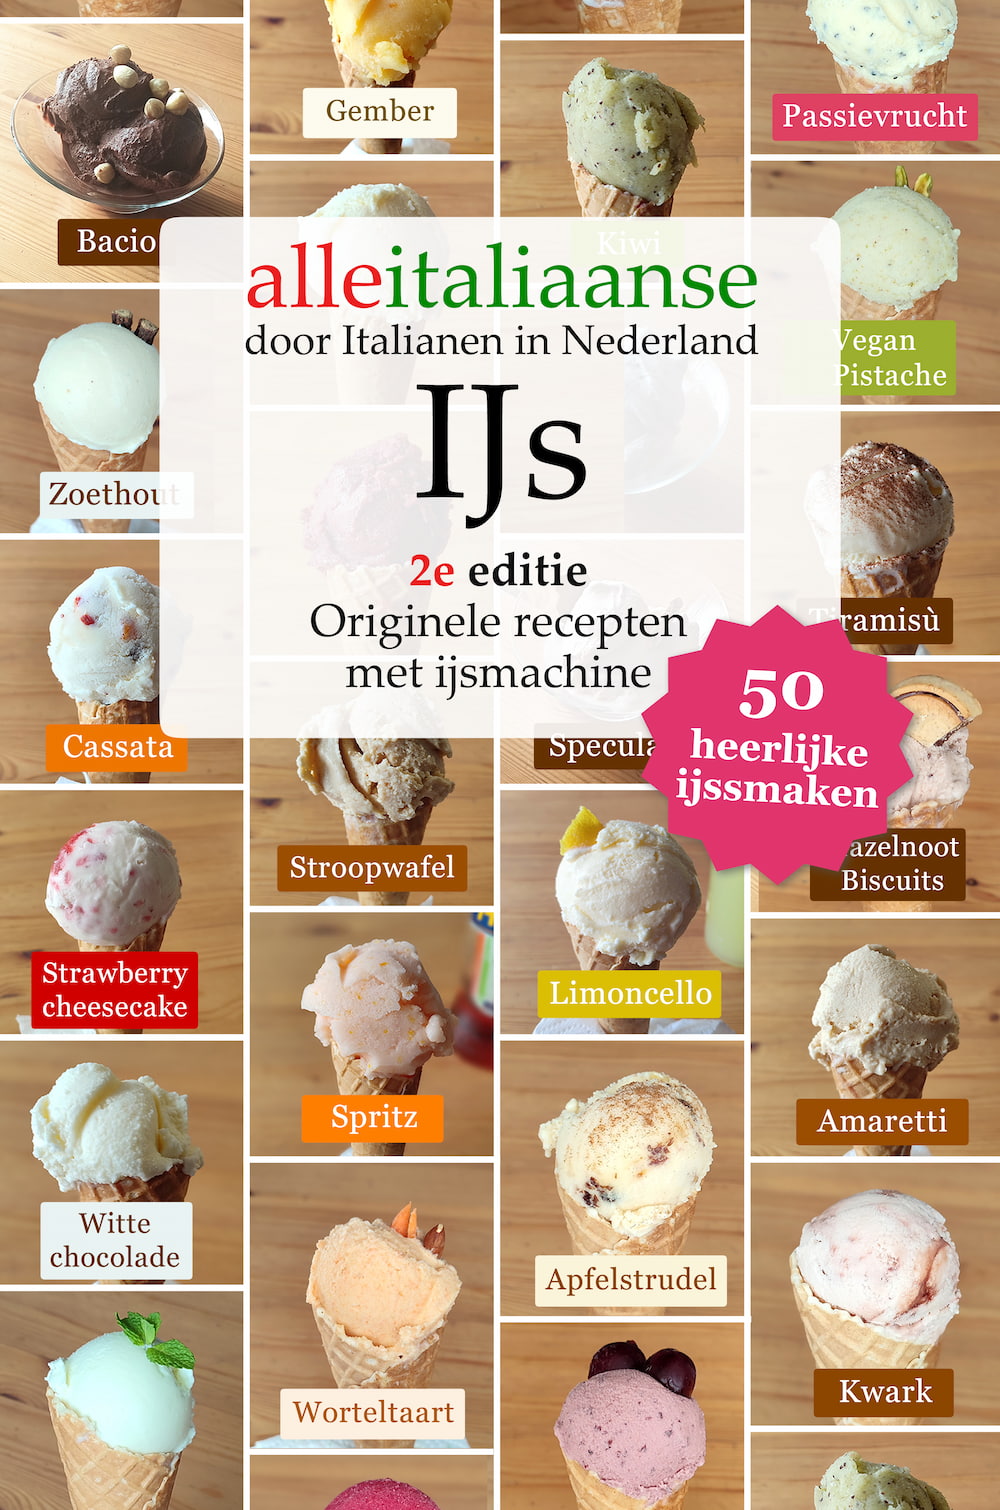 Omslag van het ijs recepten boek van Alle Italiaanse